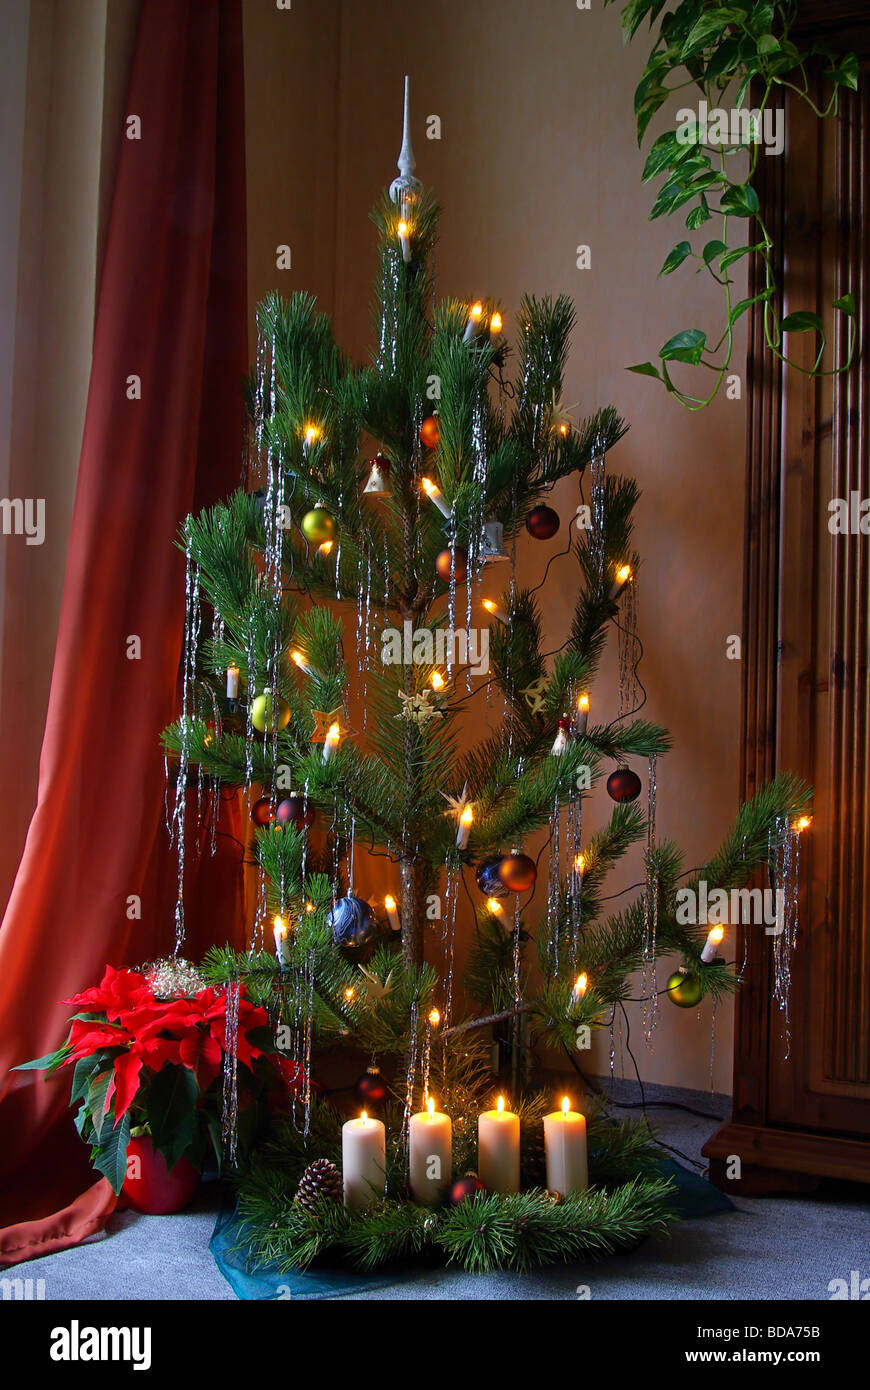 Weihnachtsbaum christmas tree 08 Stock Photo